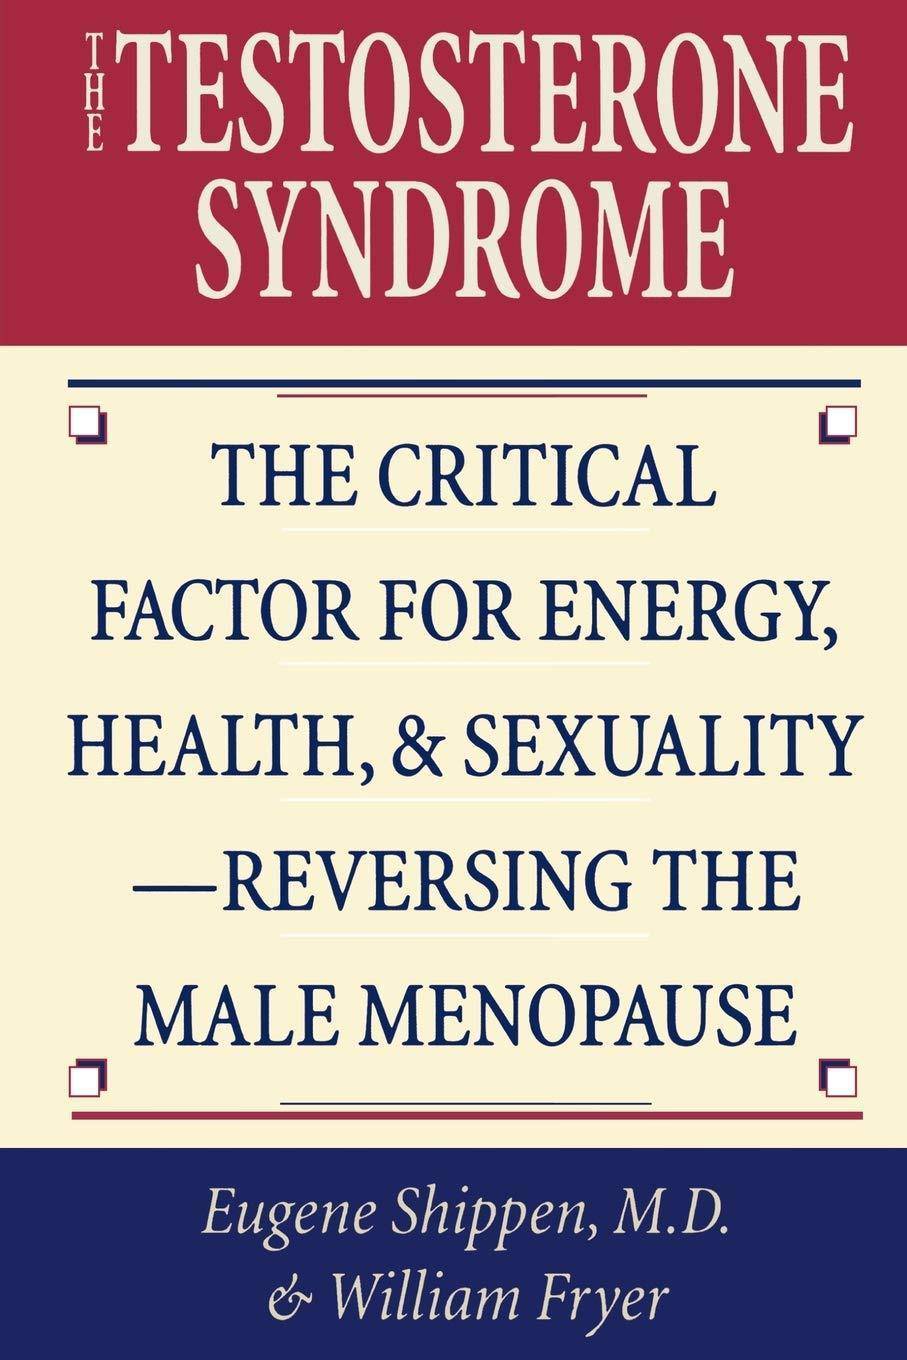 The Testosterone Syndrome - SureShot Books Publishing LLC